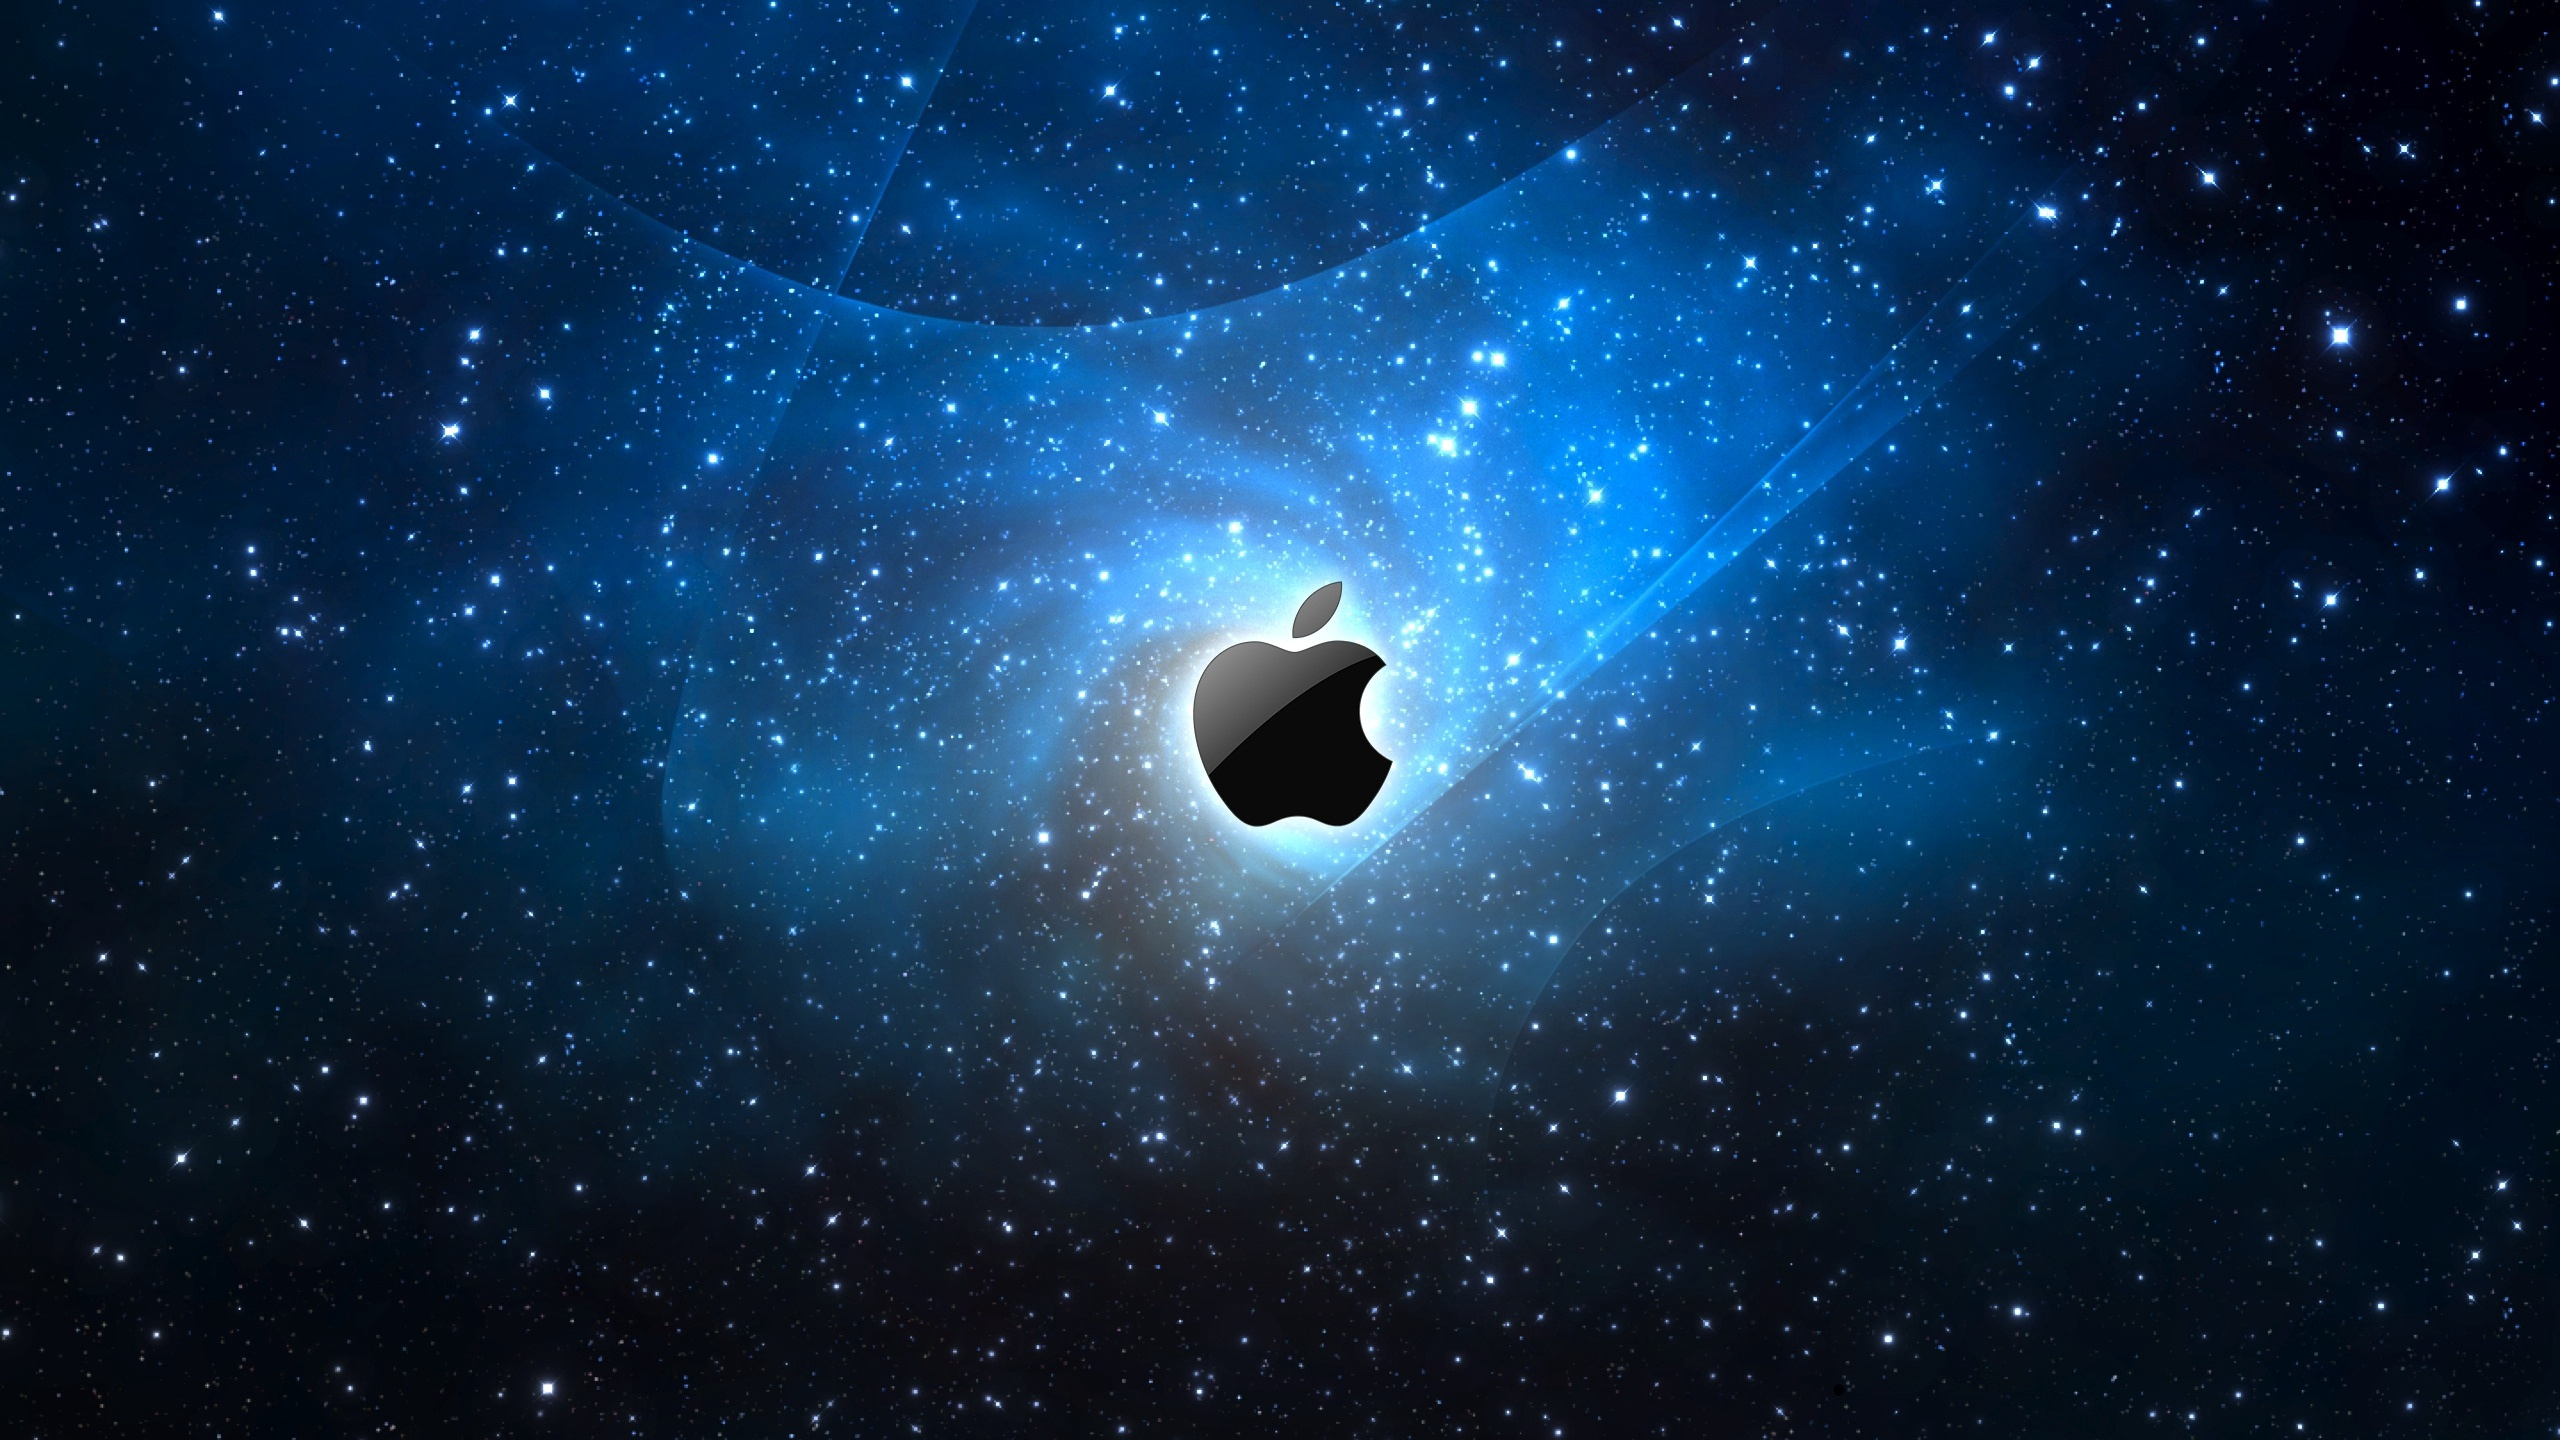 Apple, Atmosphäre, Weltraum, Astronomisches Objekt, Raum. Wallpaper in 2560x1440 Resolution